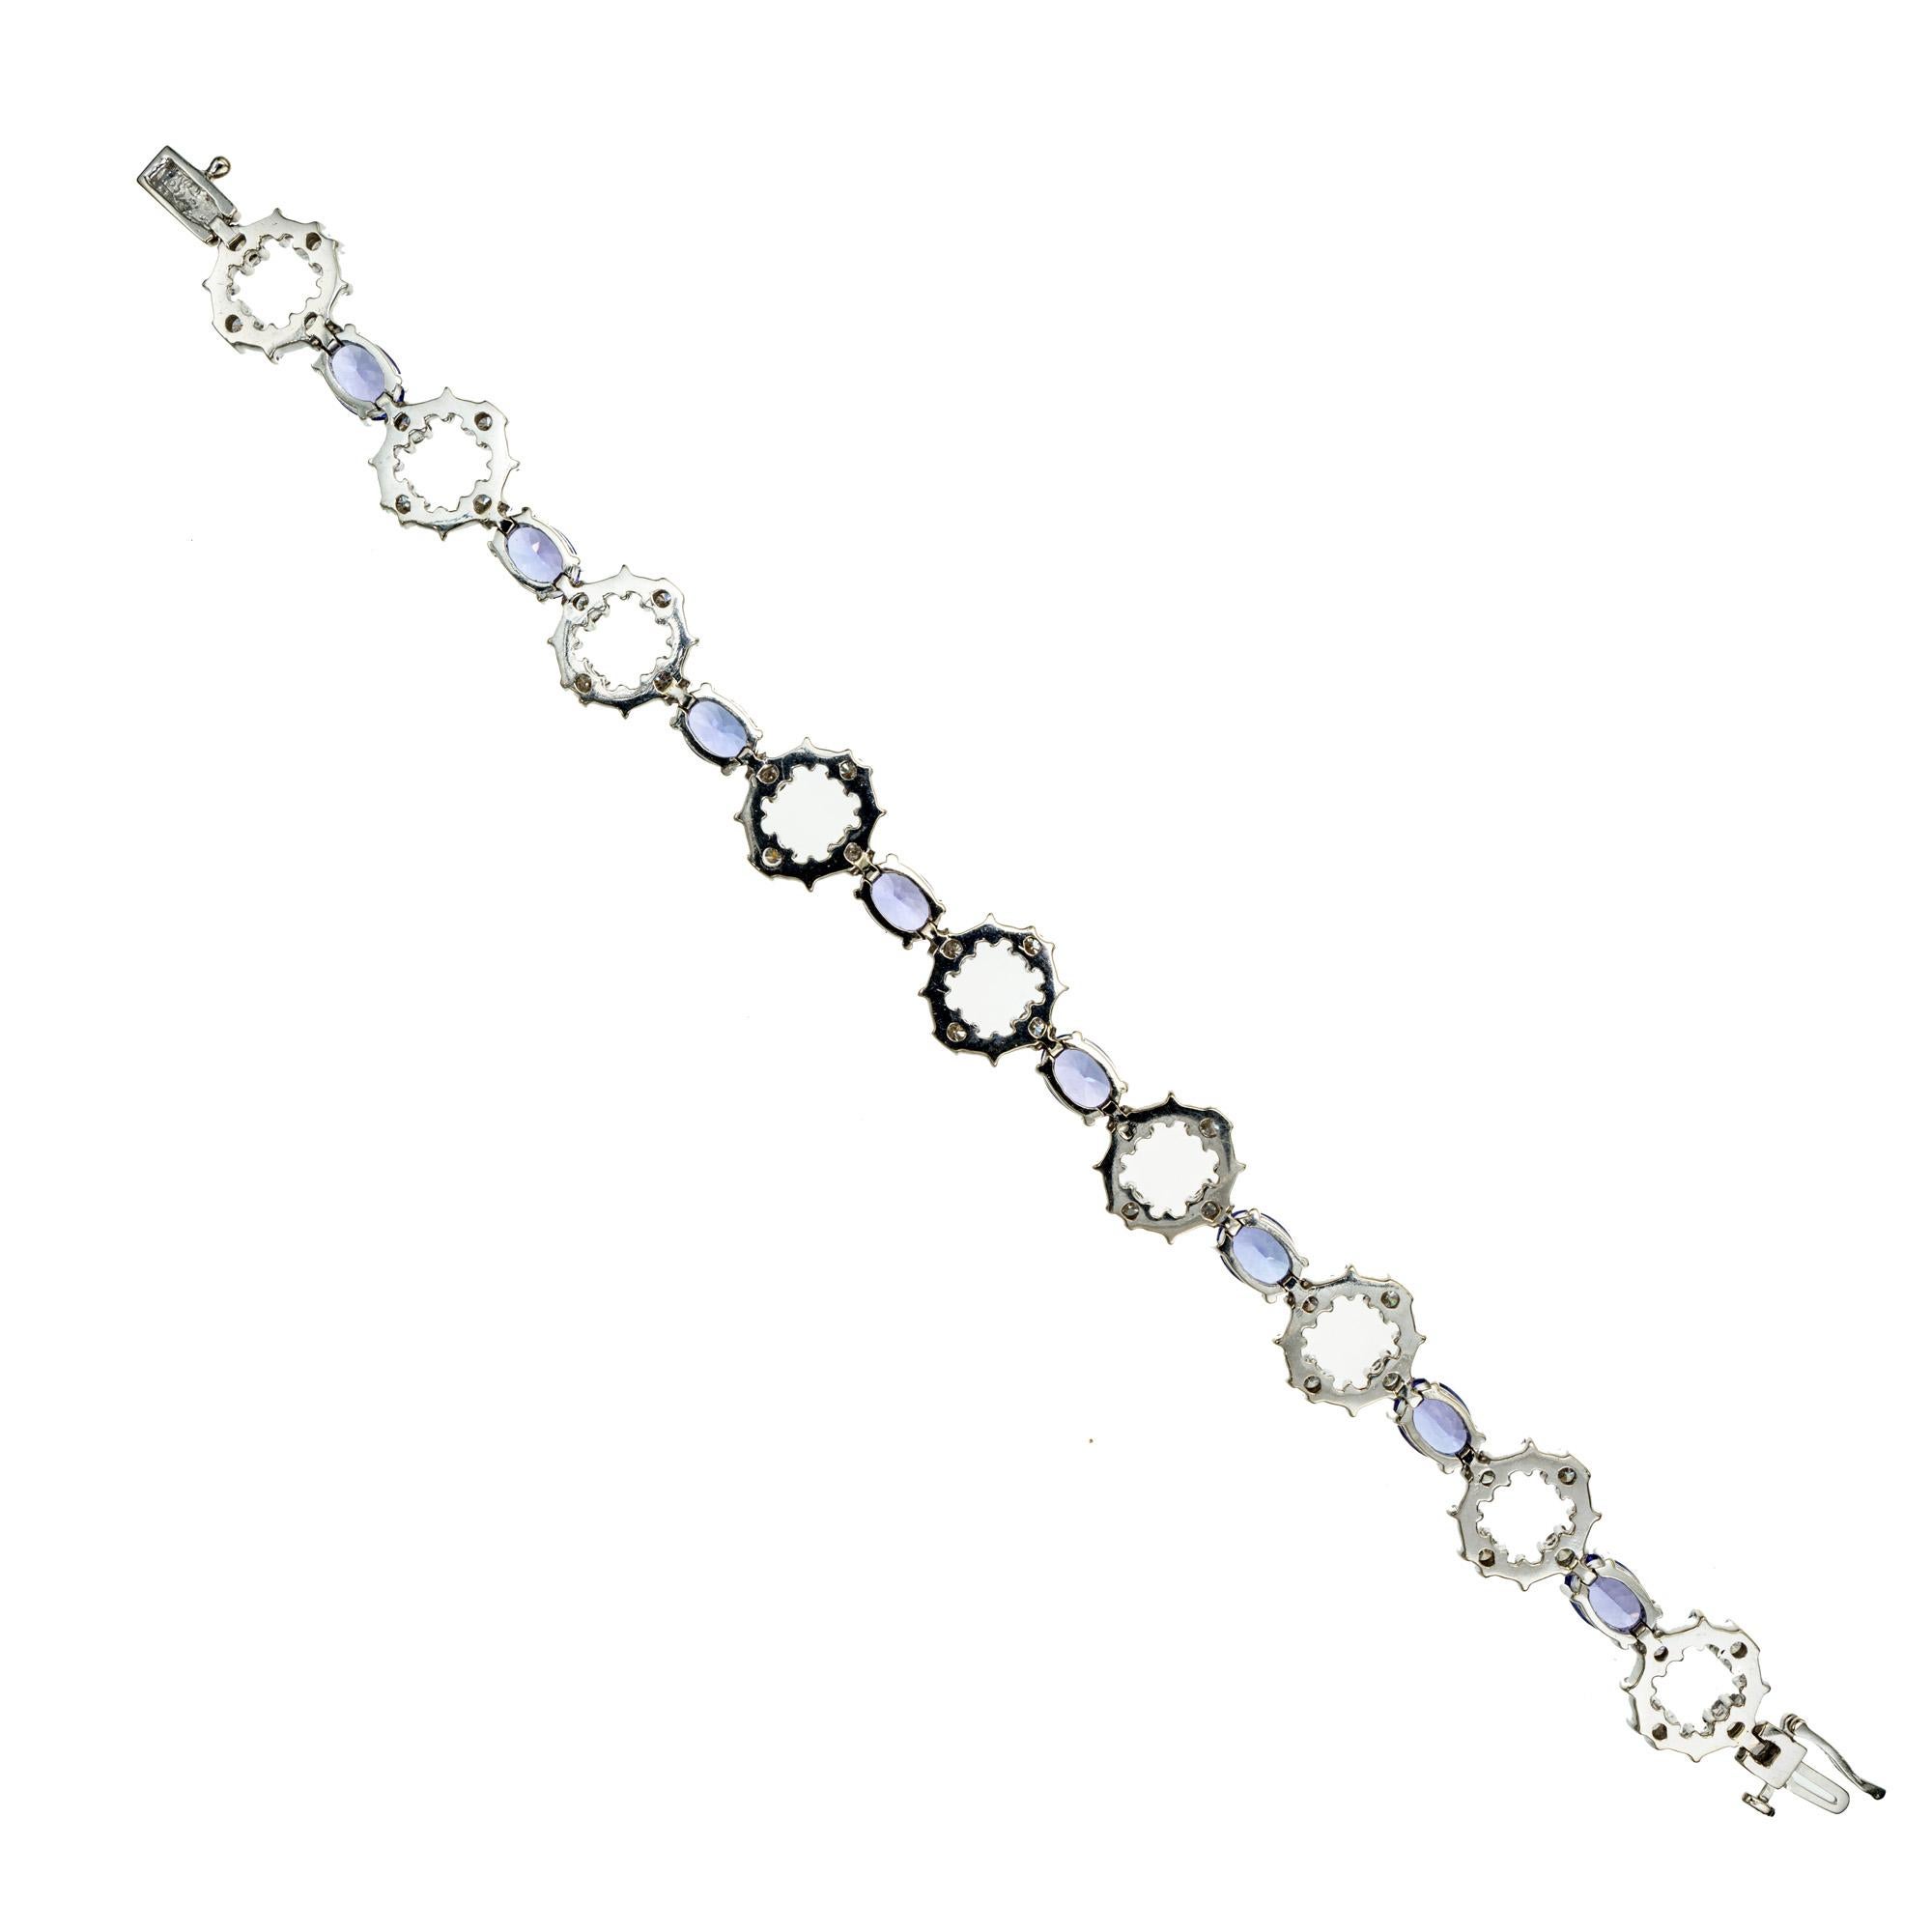 Le Vian bracelet en or blanc 14k avec tanzanite et diamant. 8 tanzanites ovales séparées par des anneaux de diamants ronds. Longueur de 7,5 pouces. 

8 tanzanites ovales bleu violacé, approx. 14.00cts
36 diamants ronds, J-K SI environ 2,50cts
Or